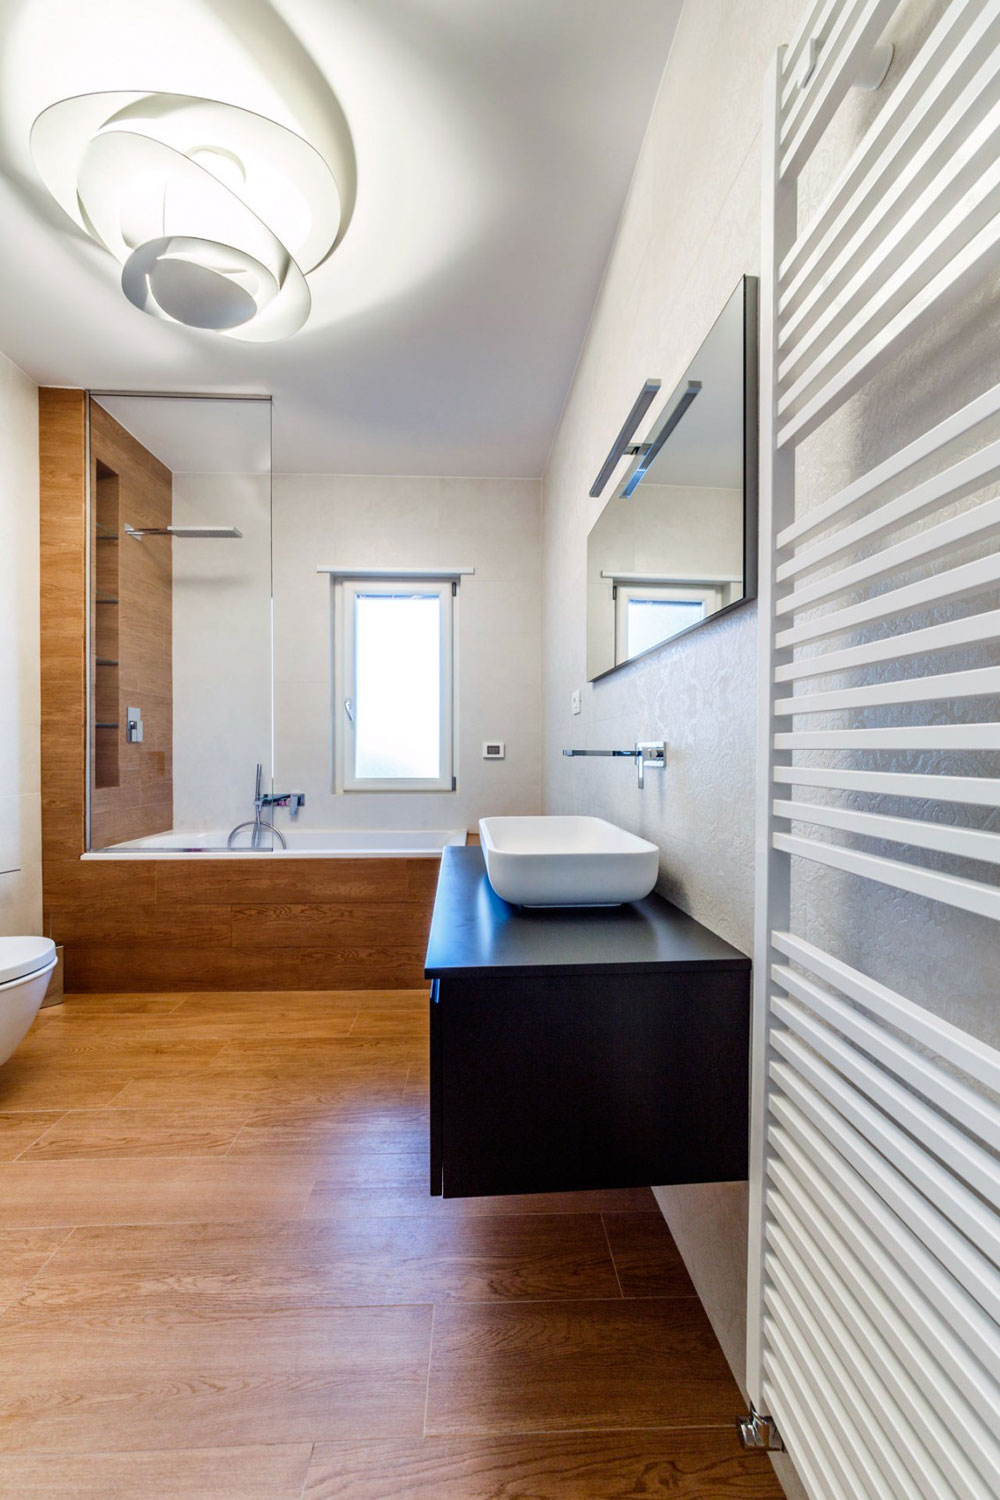 Letar du efter inspiration för modern badrumsinredning 10 Letar du efter inspiration för modern badrumsinredning?